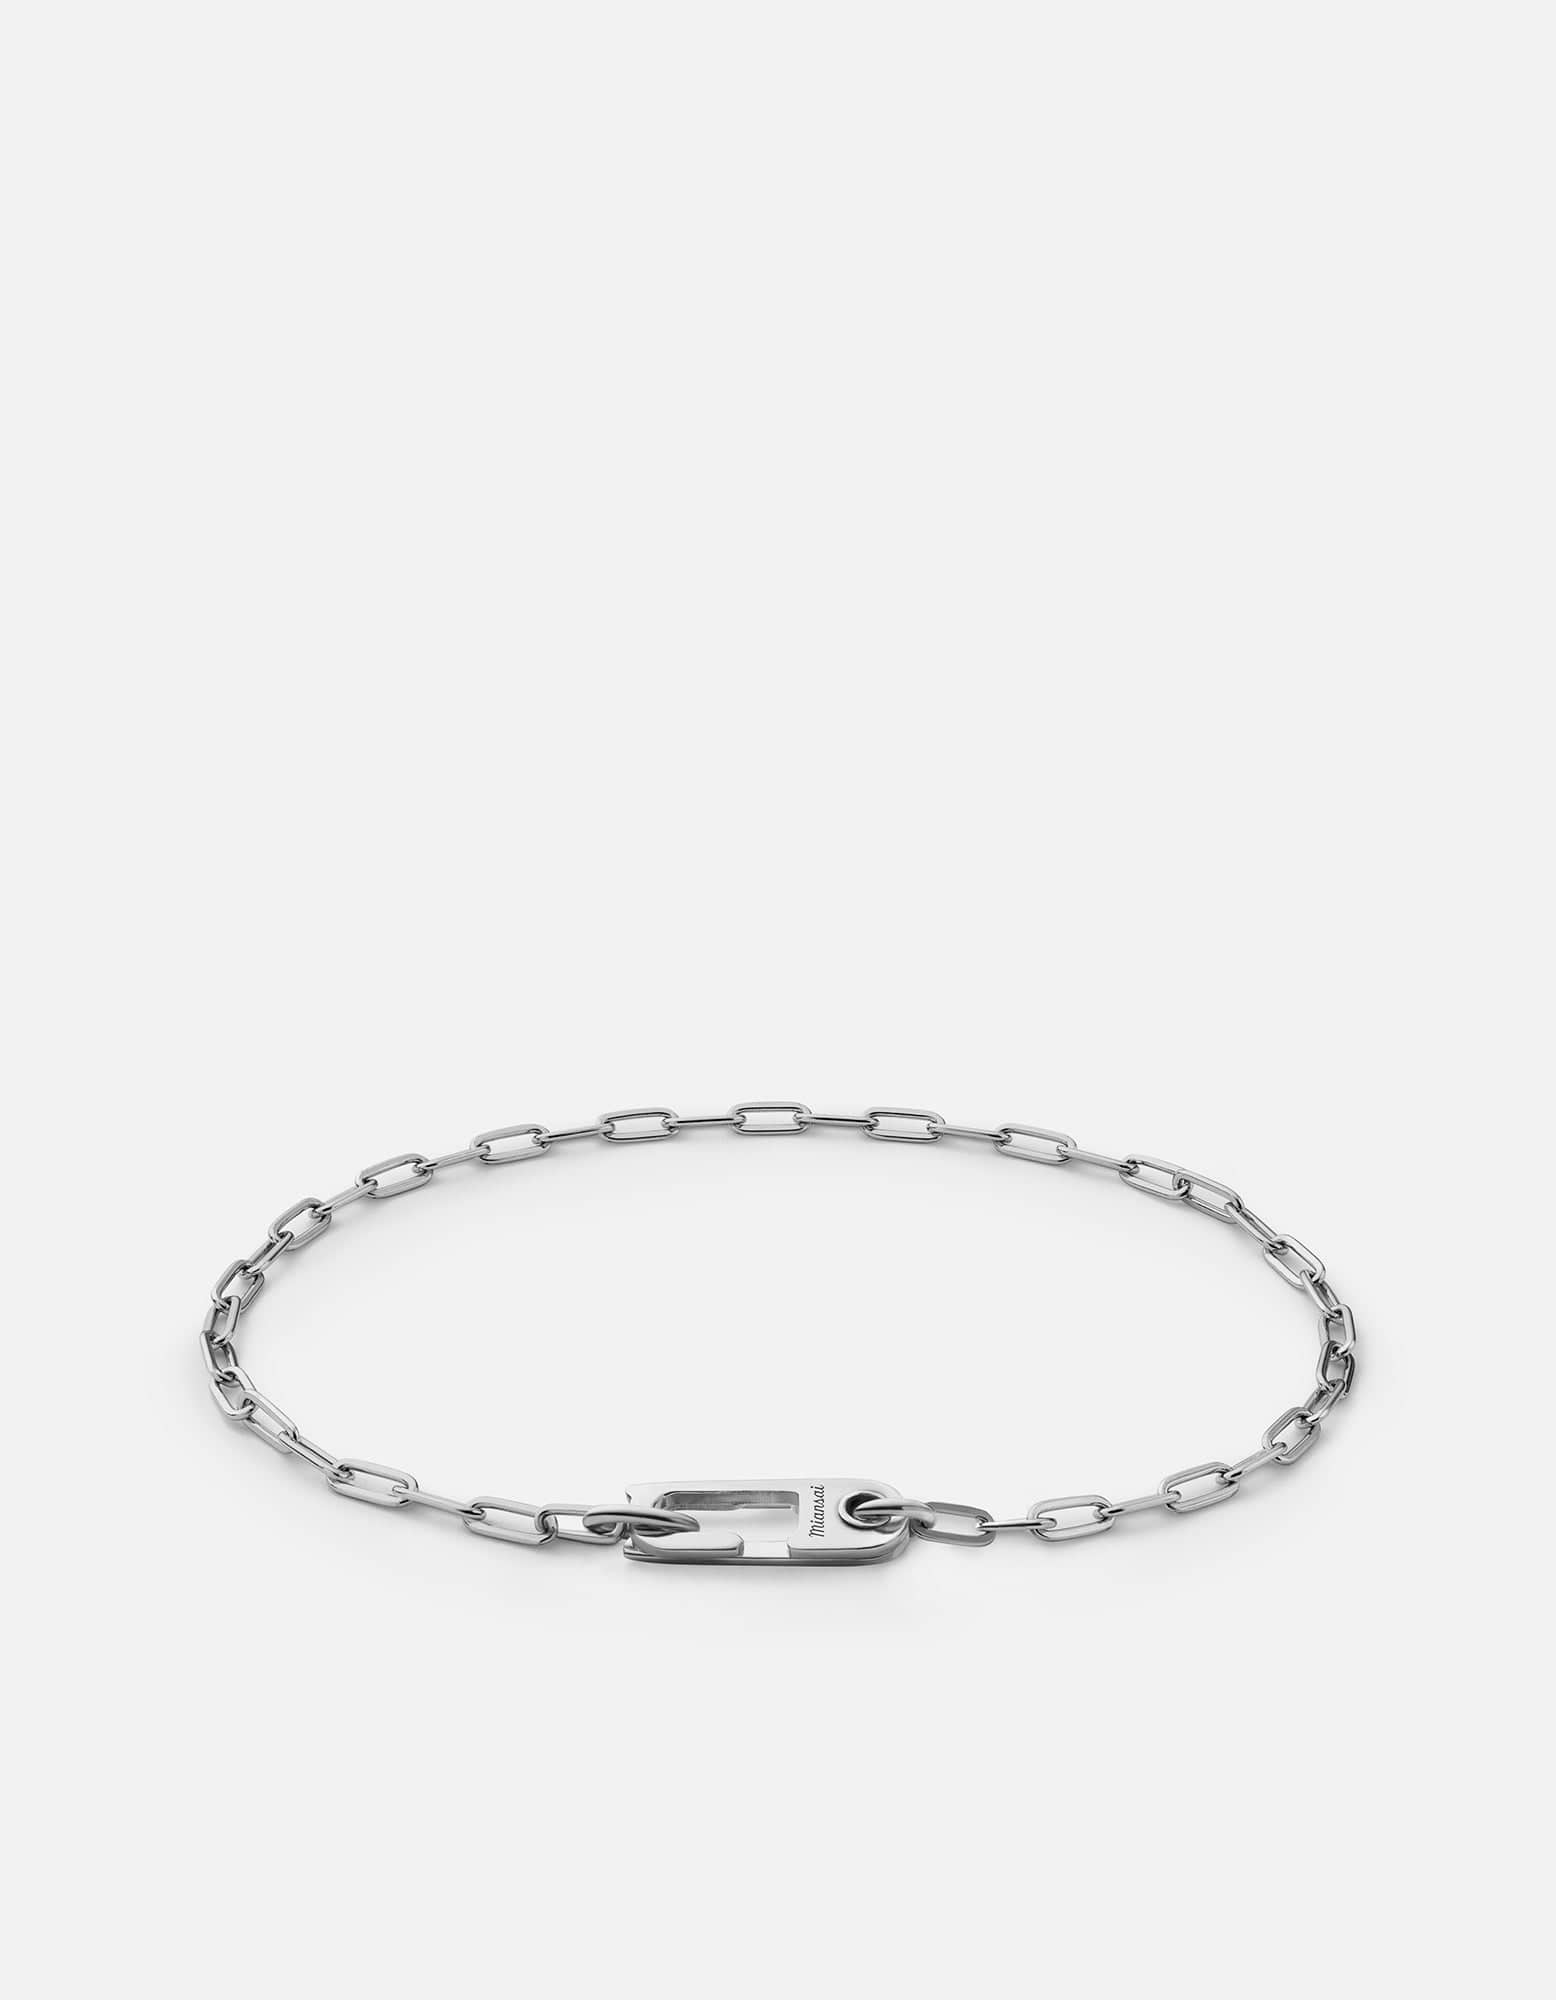 Annex Volt Link Bracelet, Sterling Silver | Men\'s Bracelets | Miansai